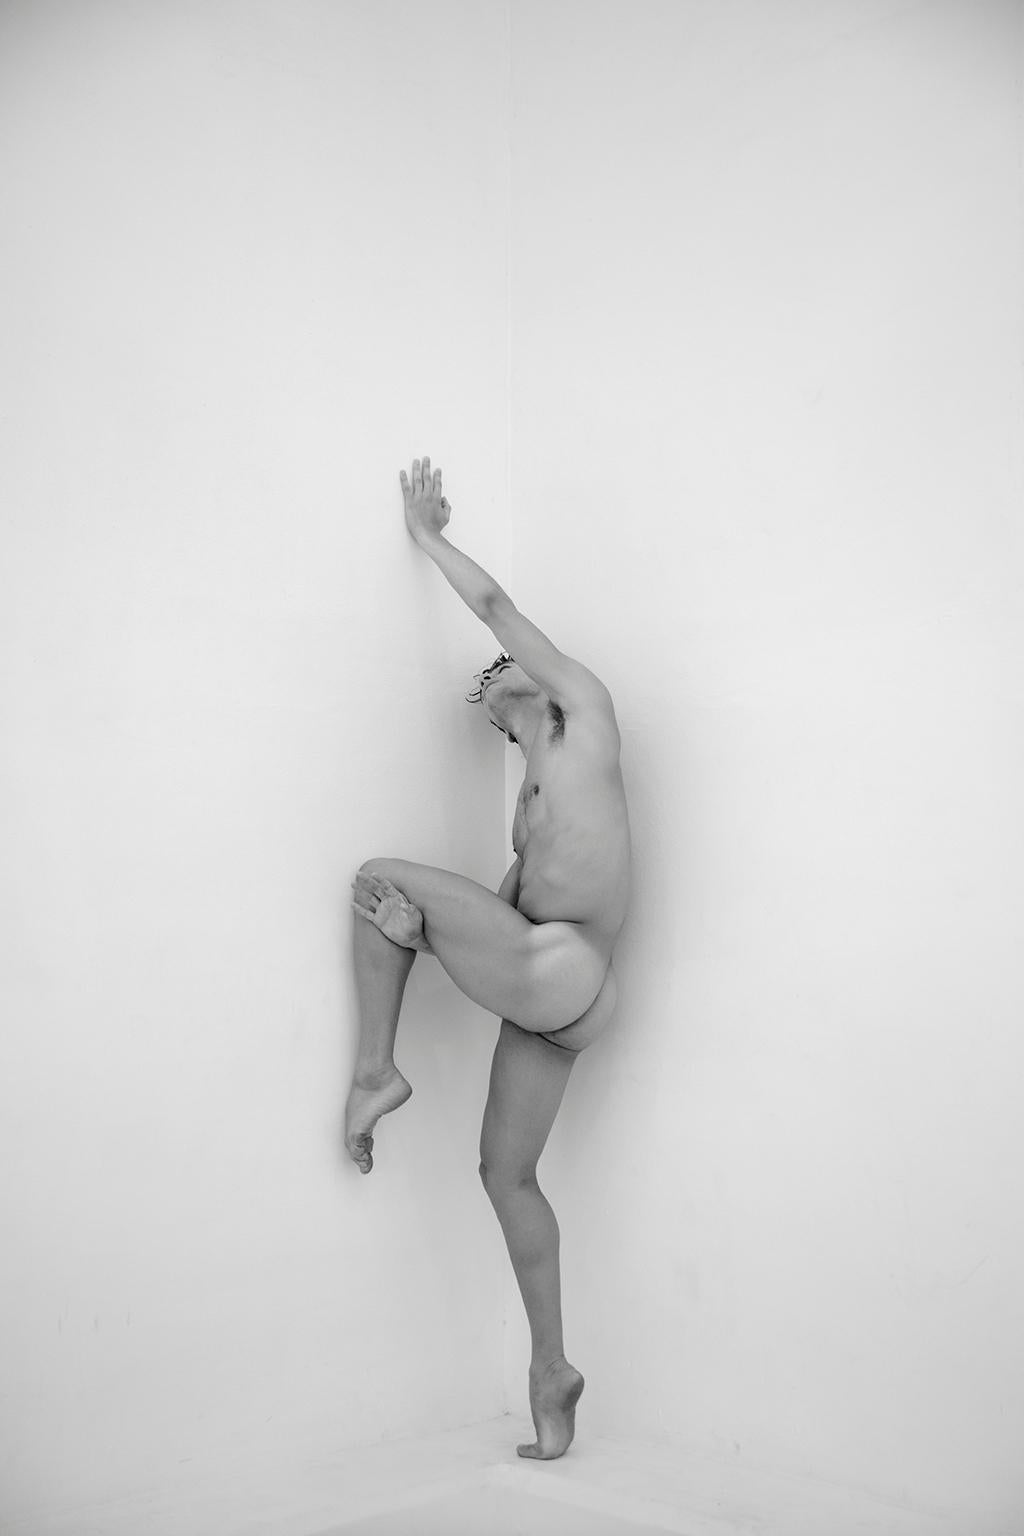 Ricky Cohete Black and White Photograph – Mann an der Wand, zweier-Set. Motion Series. Männlicher Akt. Schwarz-Weiß-Fotografie